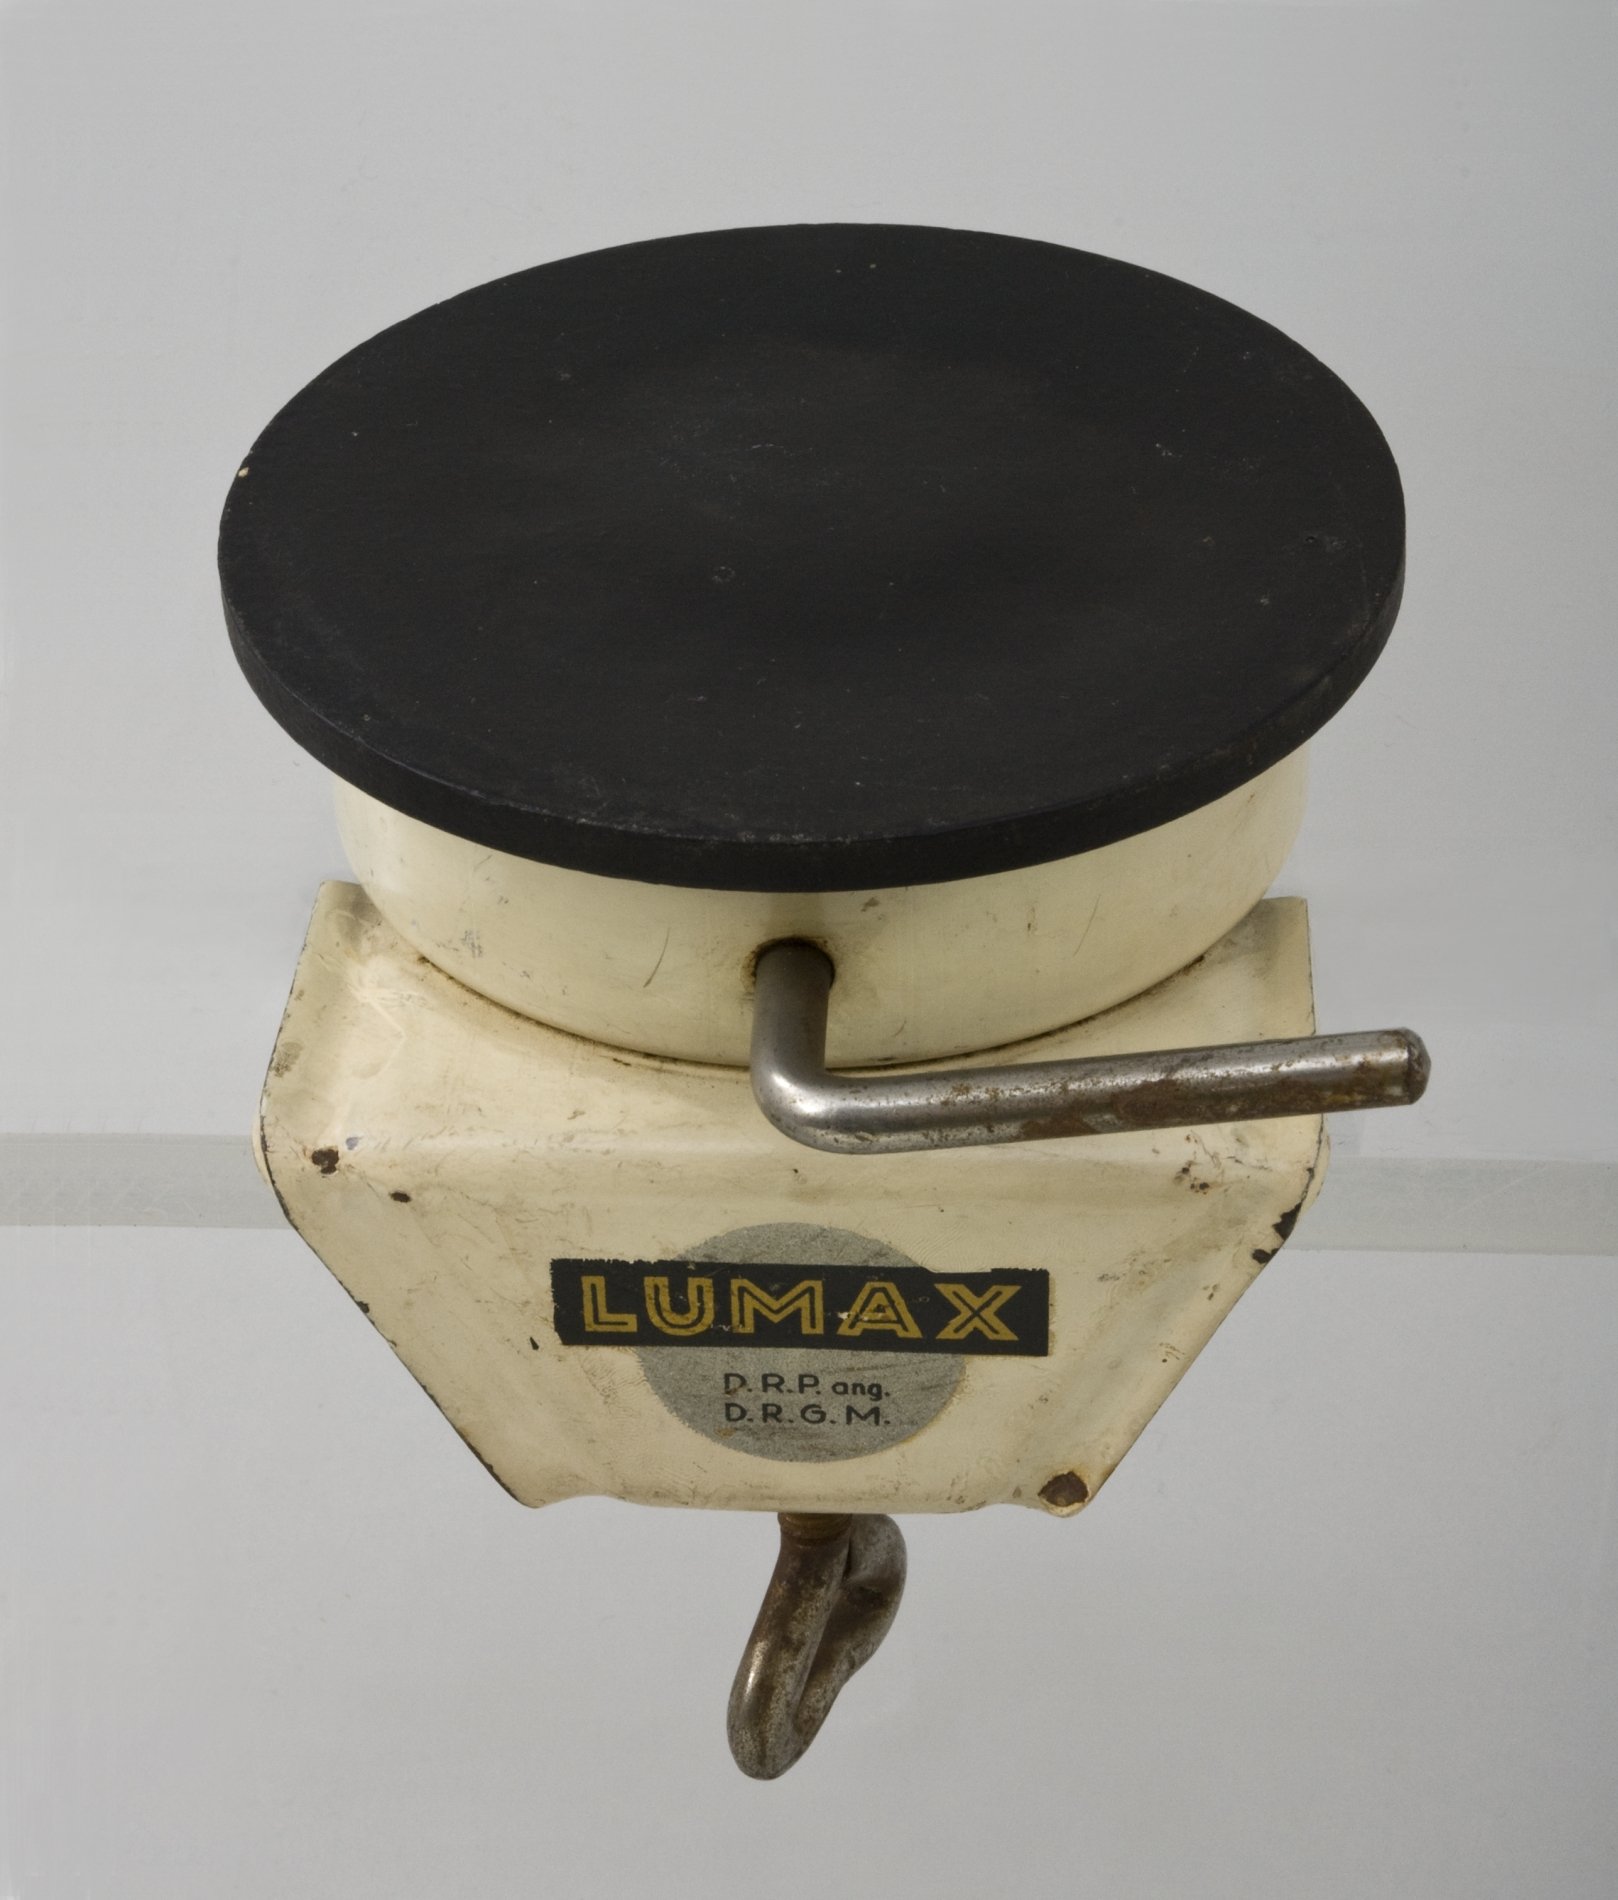 Spannvorrichtung "Lumax" (Stiftung Domäne Dahlem - Landgut und Museum, Weiternutzung nur mit Genehmigung des Museums CC BY-NC-SA)